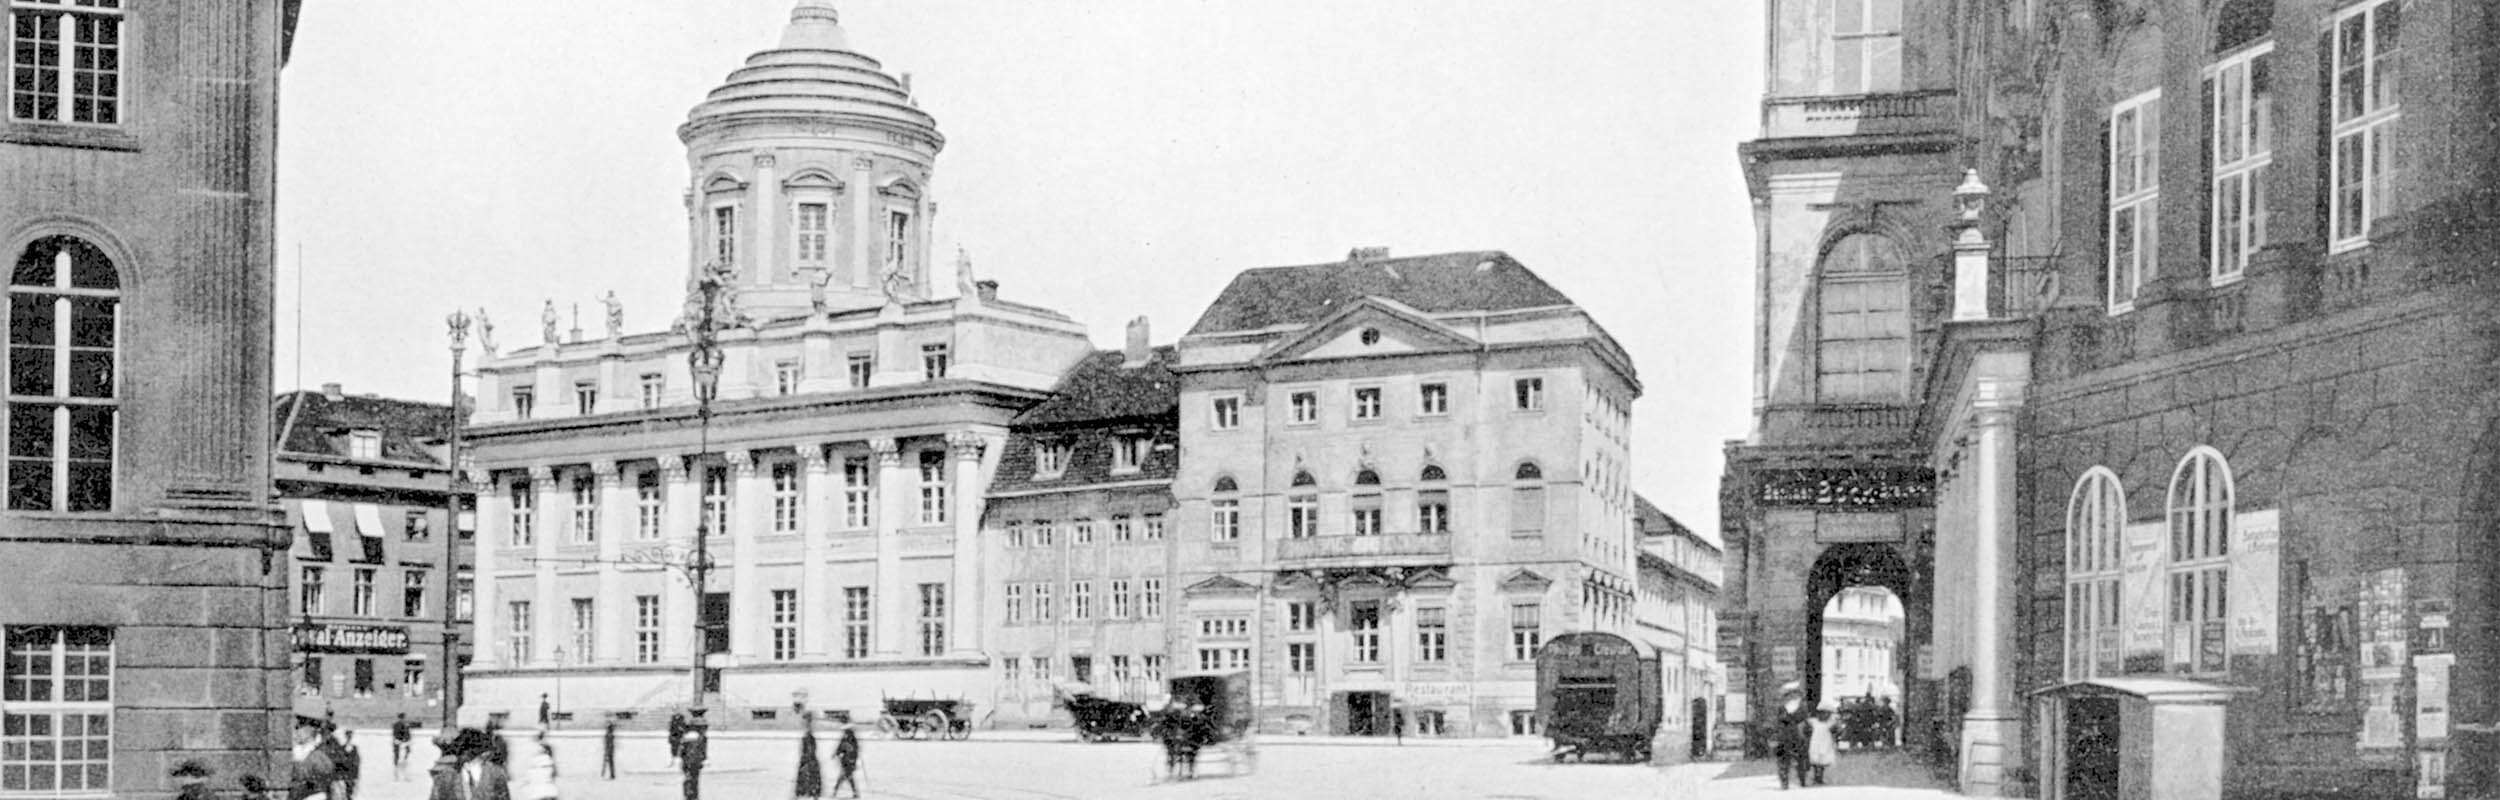 Historisches Foto: Altes Rathaus mit Verbindungsbau zum Knobelsdorffhaus am Alten Markt. Rechts im Bild Blick durch den Arkadengang des Palazzo Barberini.